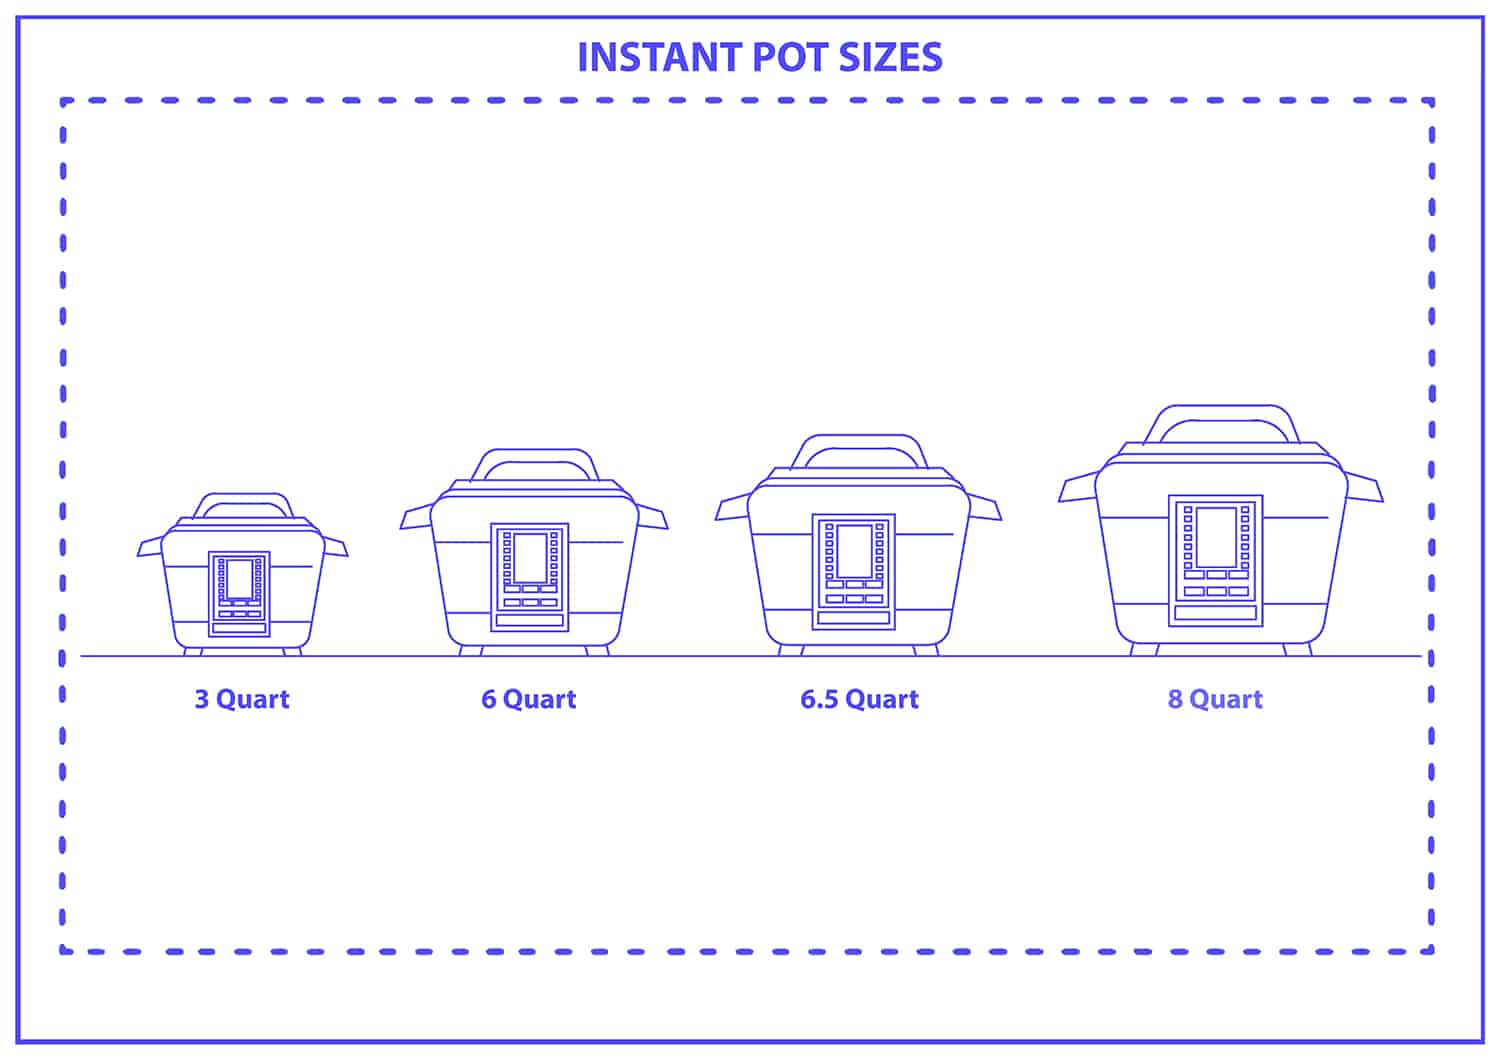 Instant pot sizes